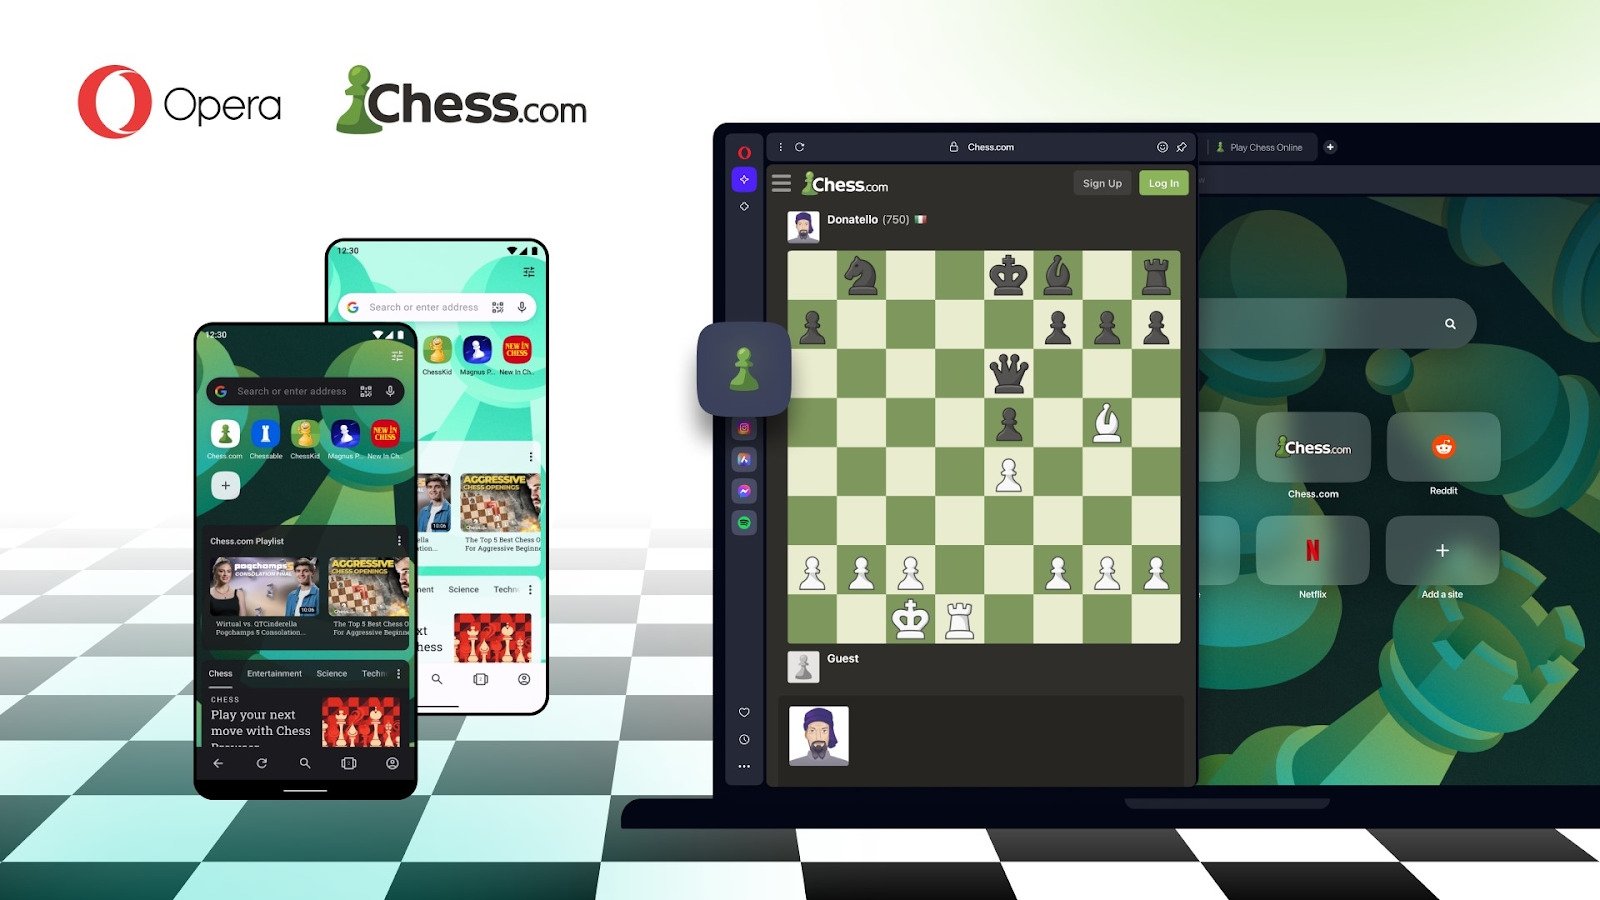 Opera recebe nova integração com plataforma Chess.com